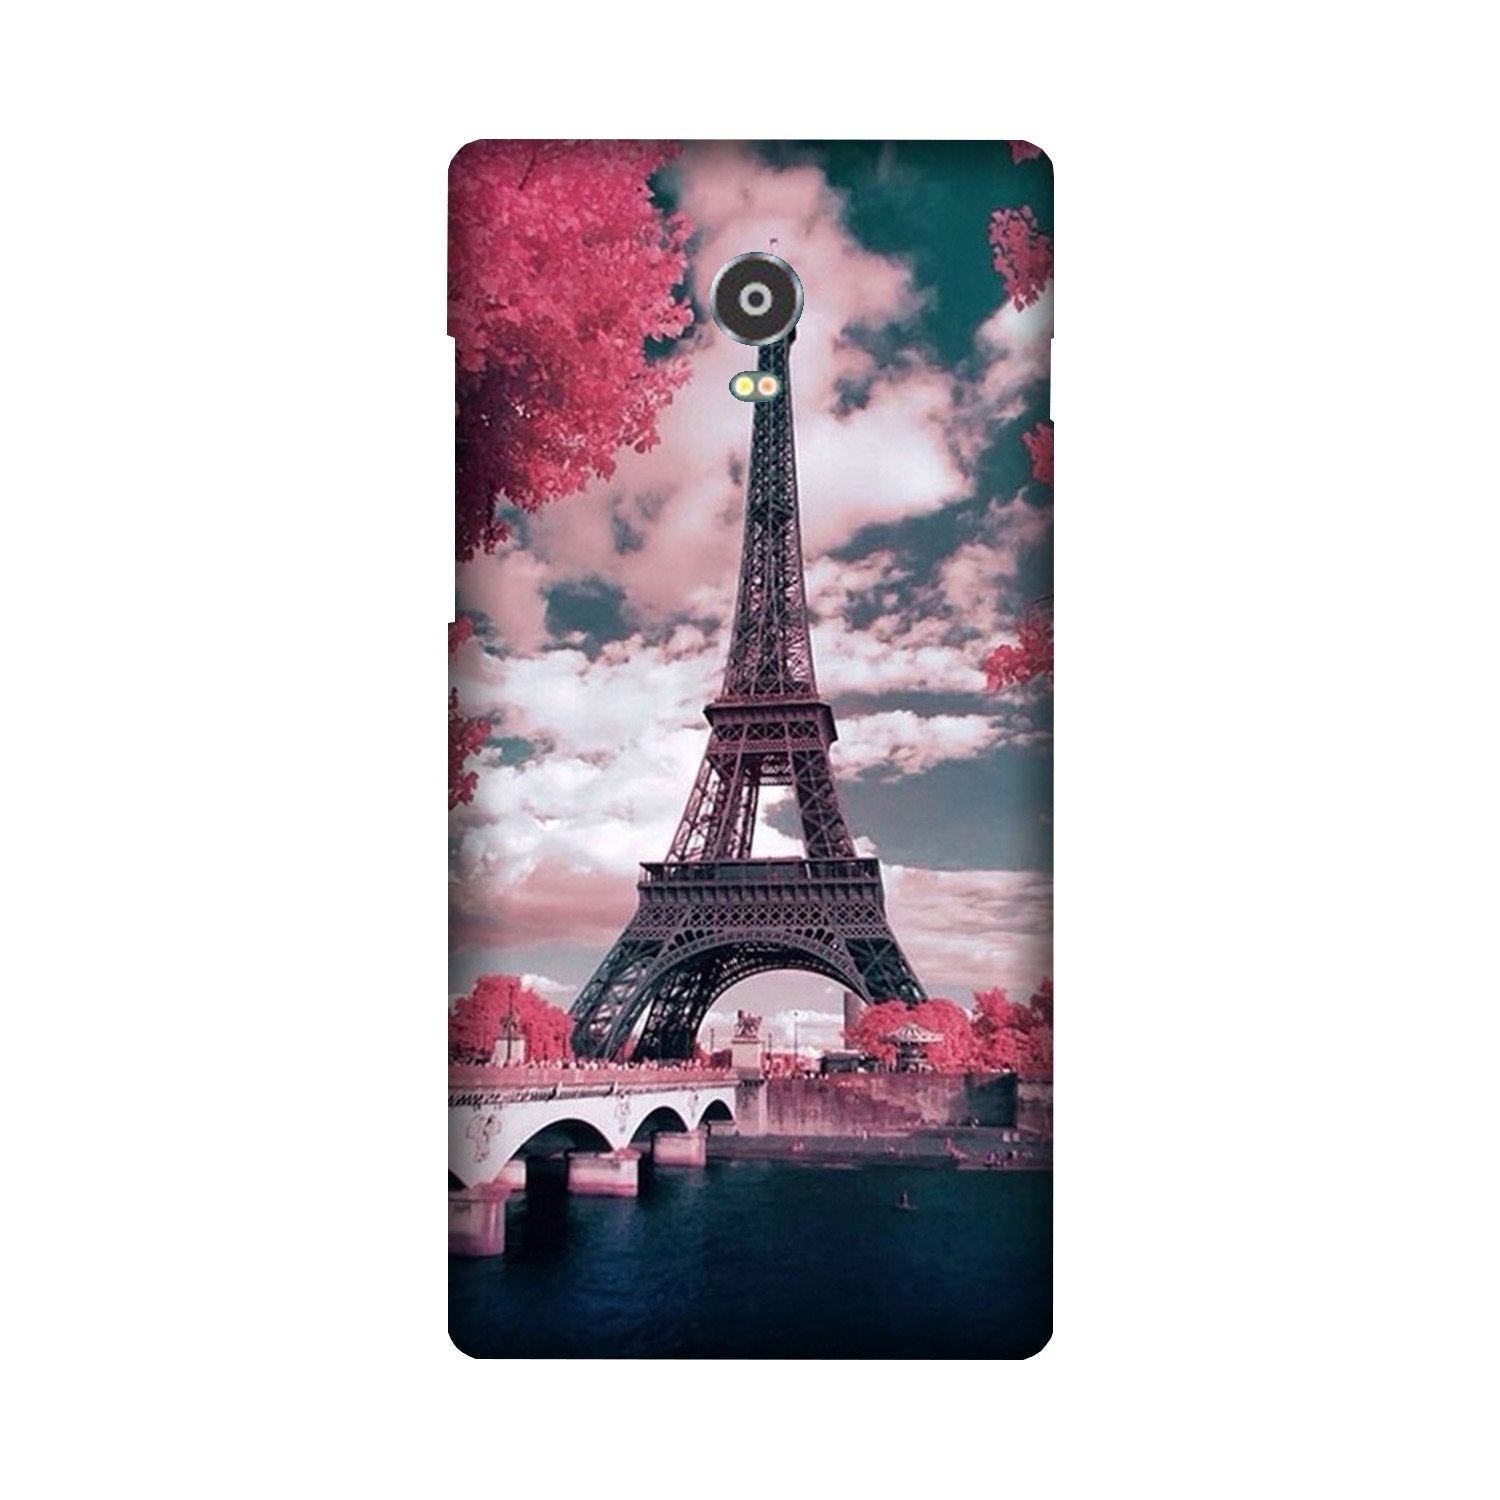 Eiffel Tower Case for Lenovo Vibe P1  (Design - 101)